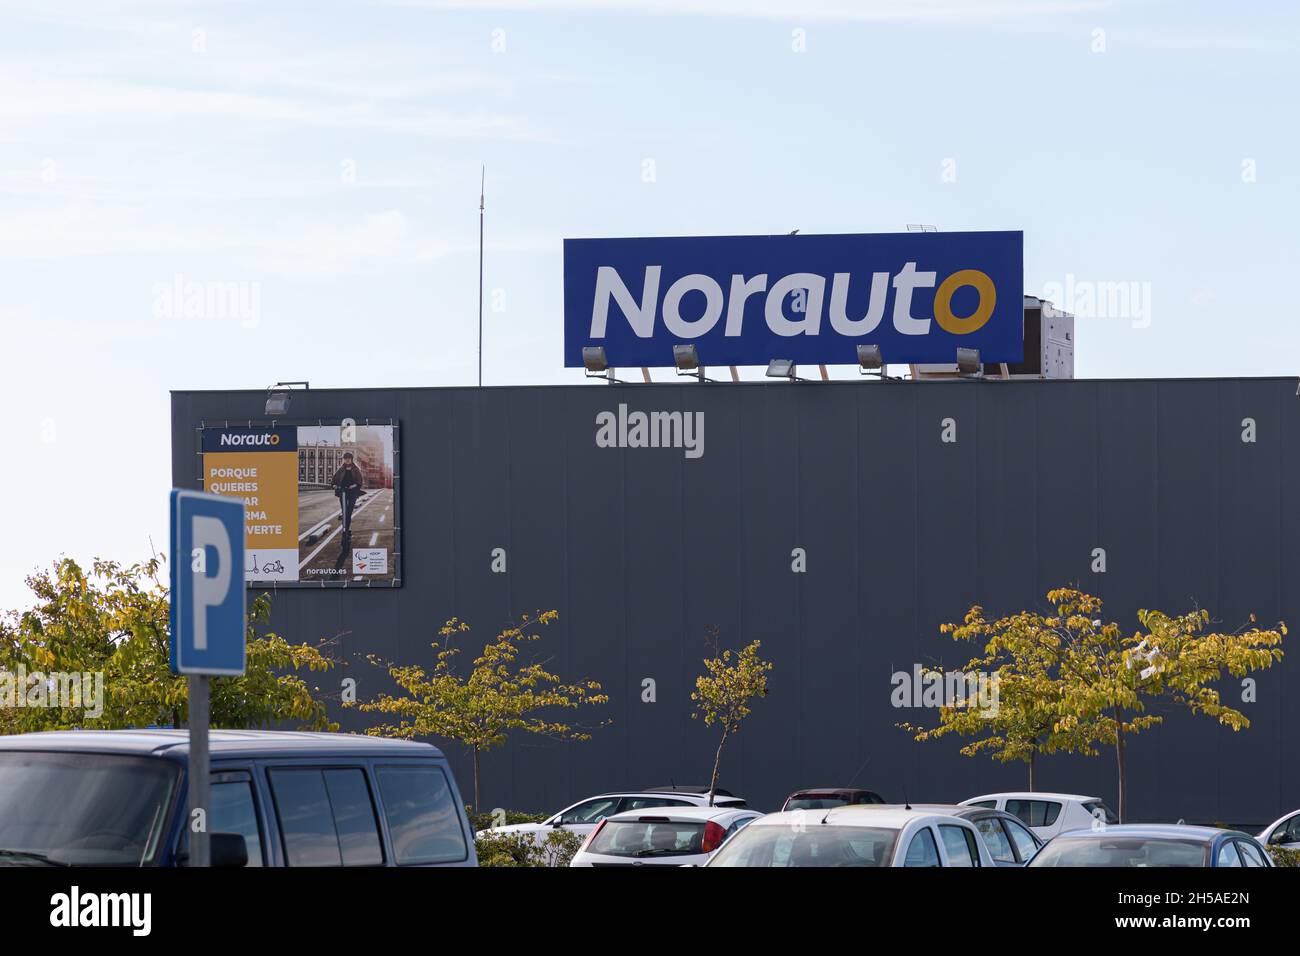 LA ELIANA, SPANIEN - 27. OKTOBER 2021: Norauto ist ein französisches Unternehmen, das sich auf Autoreparaturen, Autozubehör und Autoteile konzentriert Stockfoto